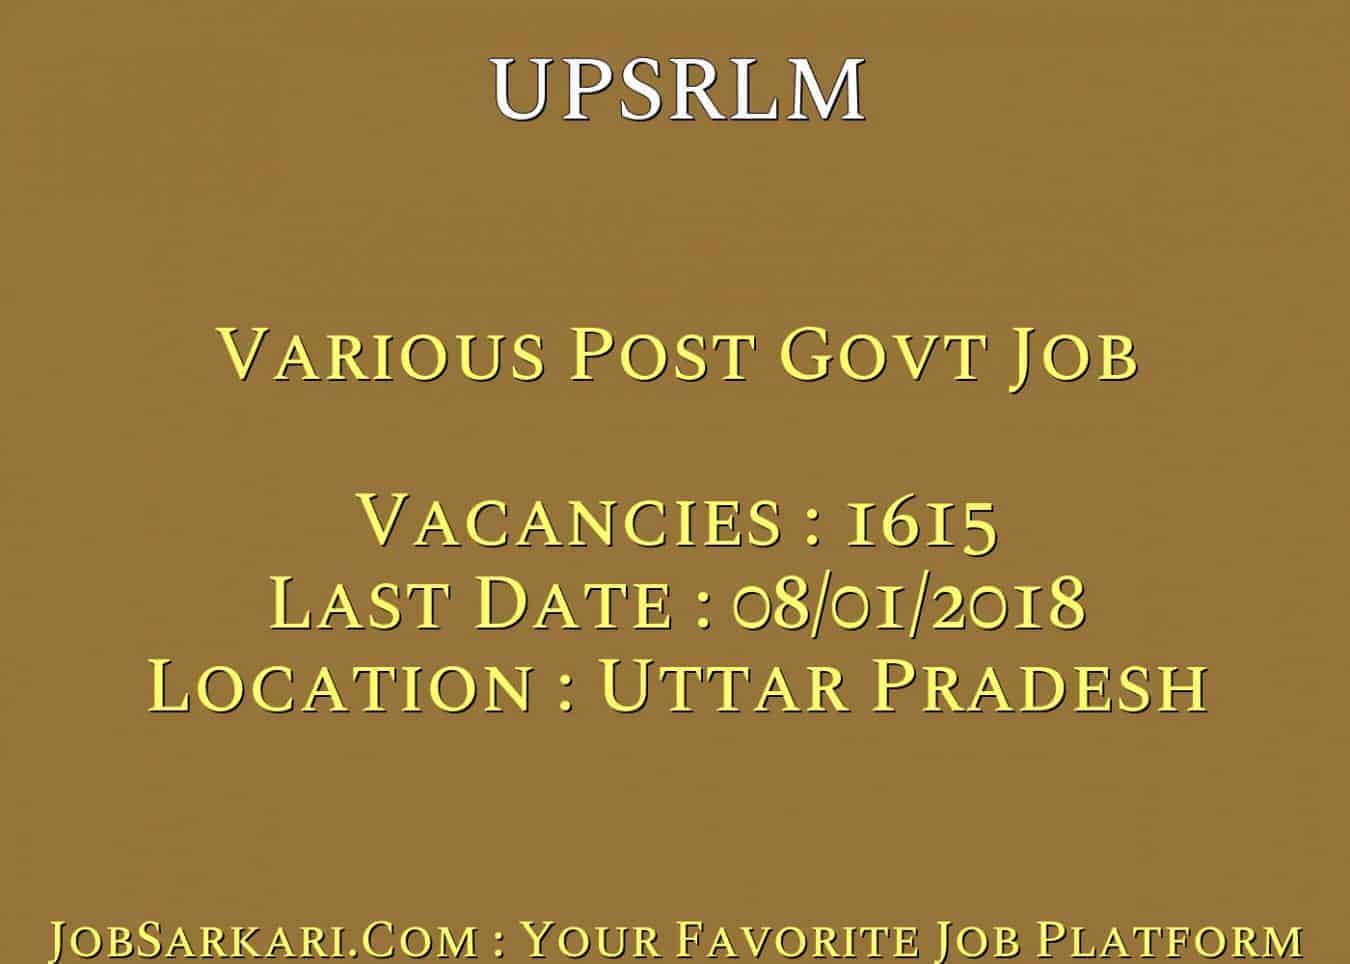 UPSRLM Recruitment 2018 For Various Post Govt Job